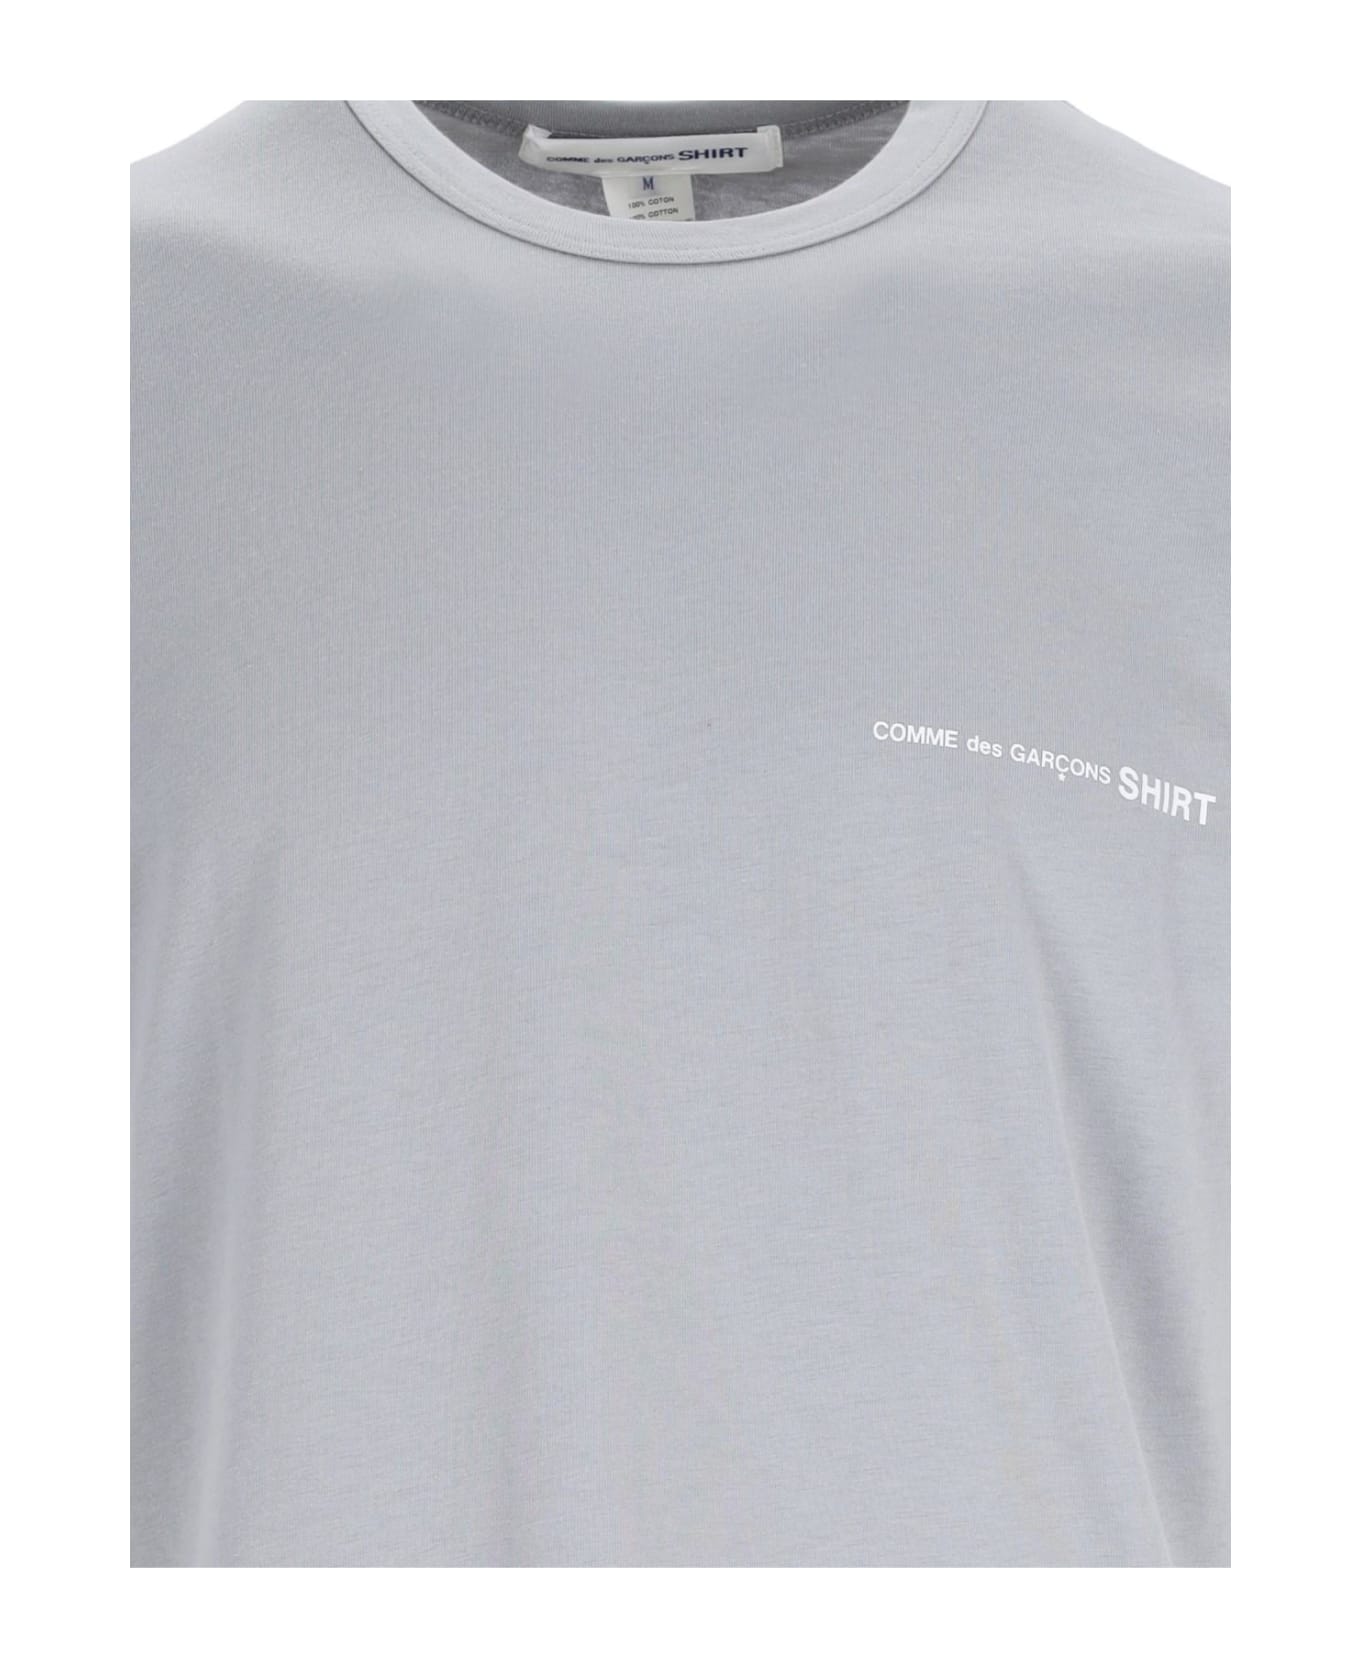 Comme des Garçons Shirt Logo T-shirt - Grey シャツ